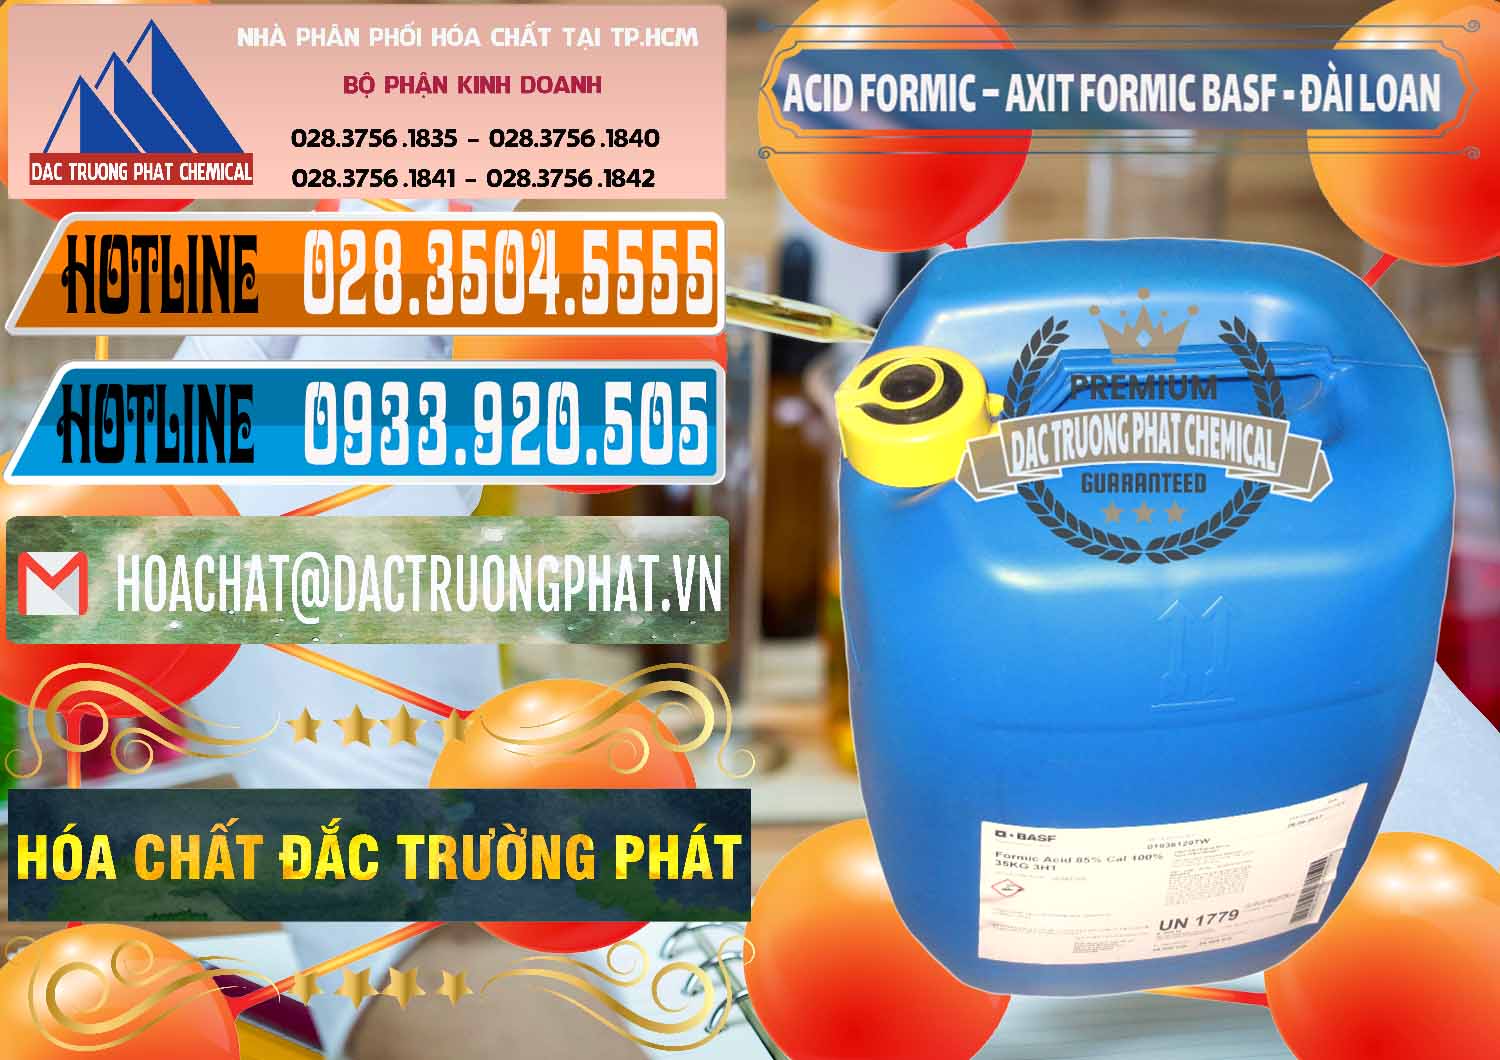 Đơn vị chuyên kinh doanh _ bán Acid Formic - Axit Formic 85% BASF Đài Loan Taiwan - 0027 - Công ty chuyên cung cấp & kinh doanh hóa chất tại TP.HCM - stmp.net